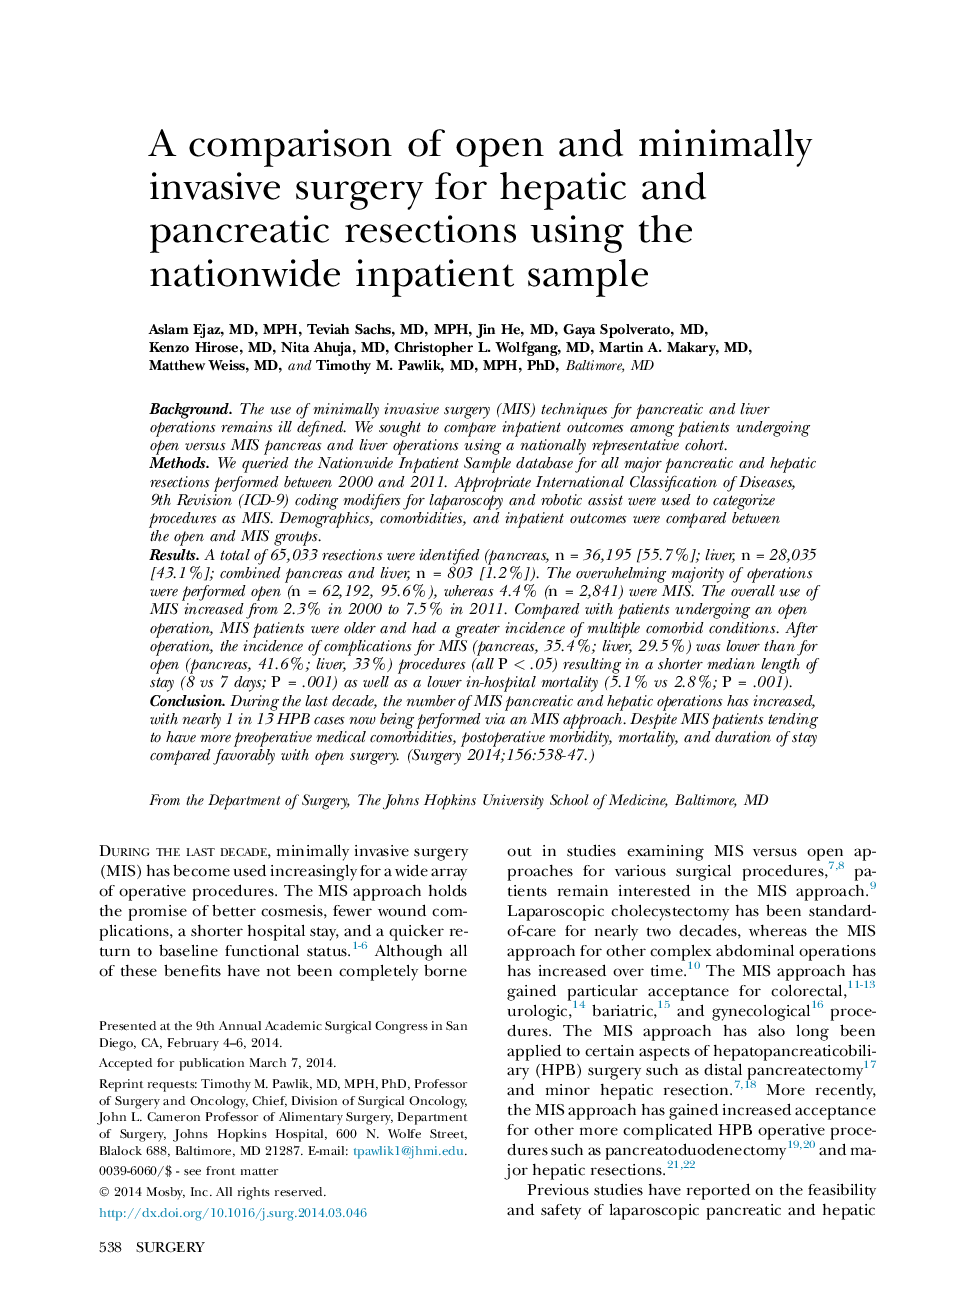 مقایسه عمل جراحی باز و حداقل تهاجمی برای رزکسانسیون های کبدی و پانکراس با استفاده از نمونه های سرپایی در سراسر کشور 